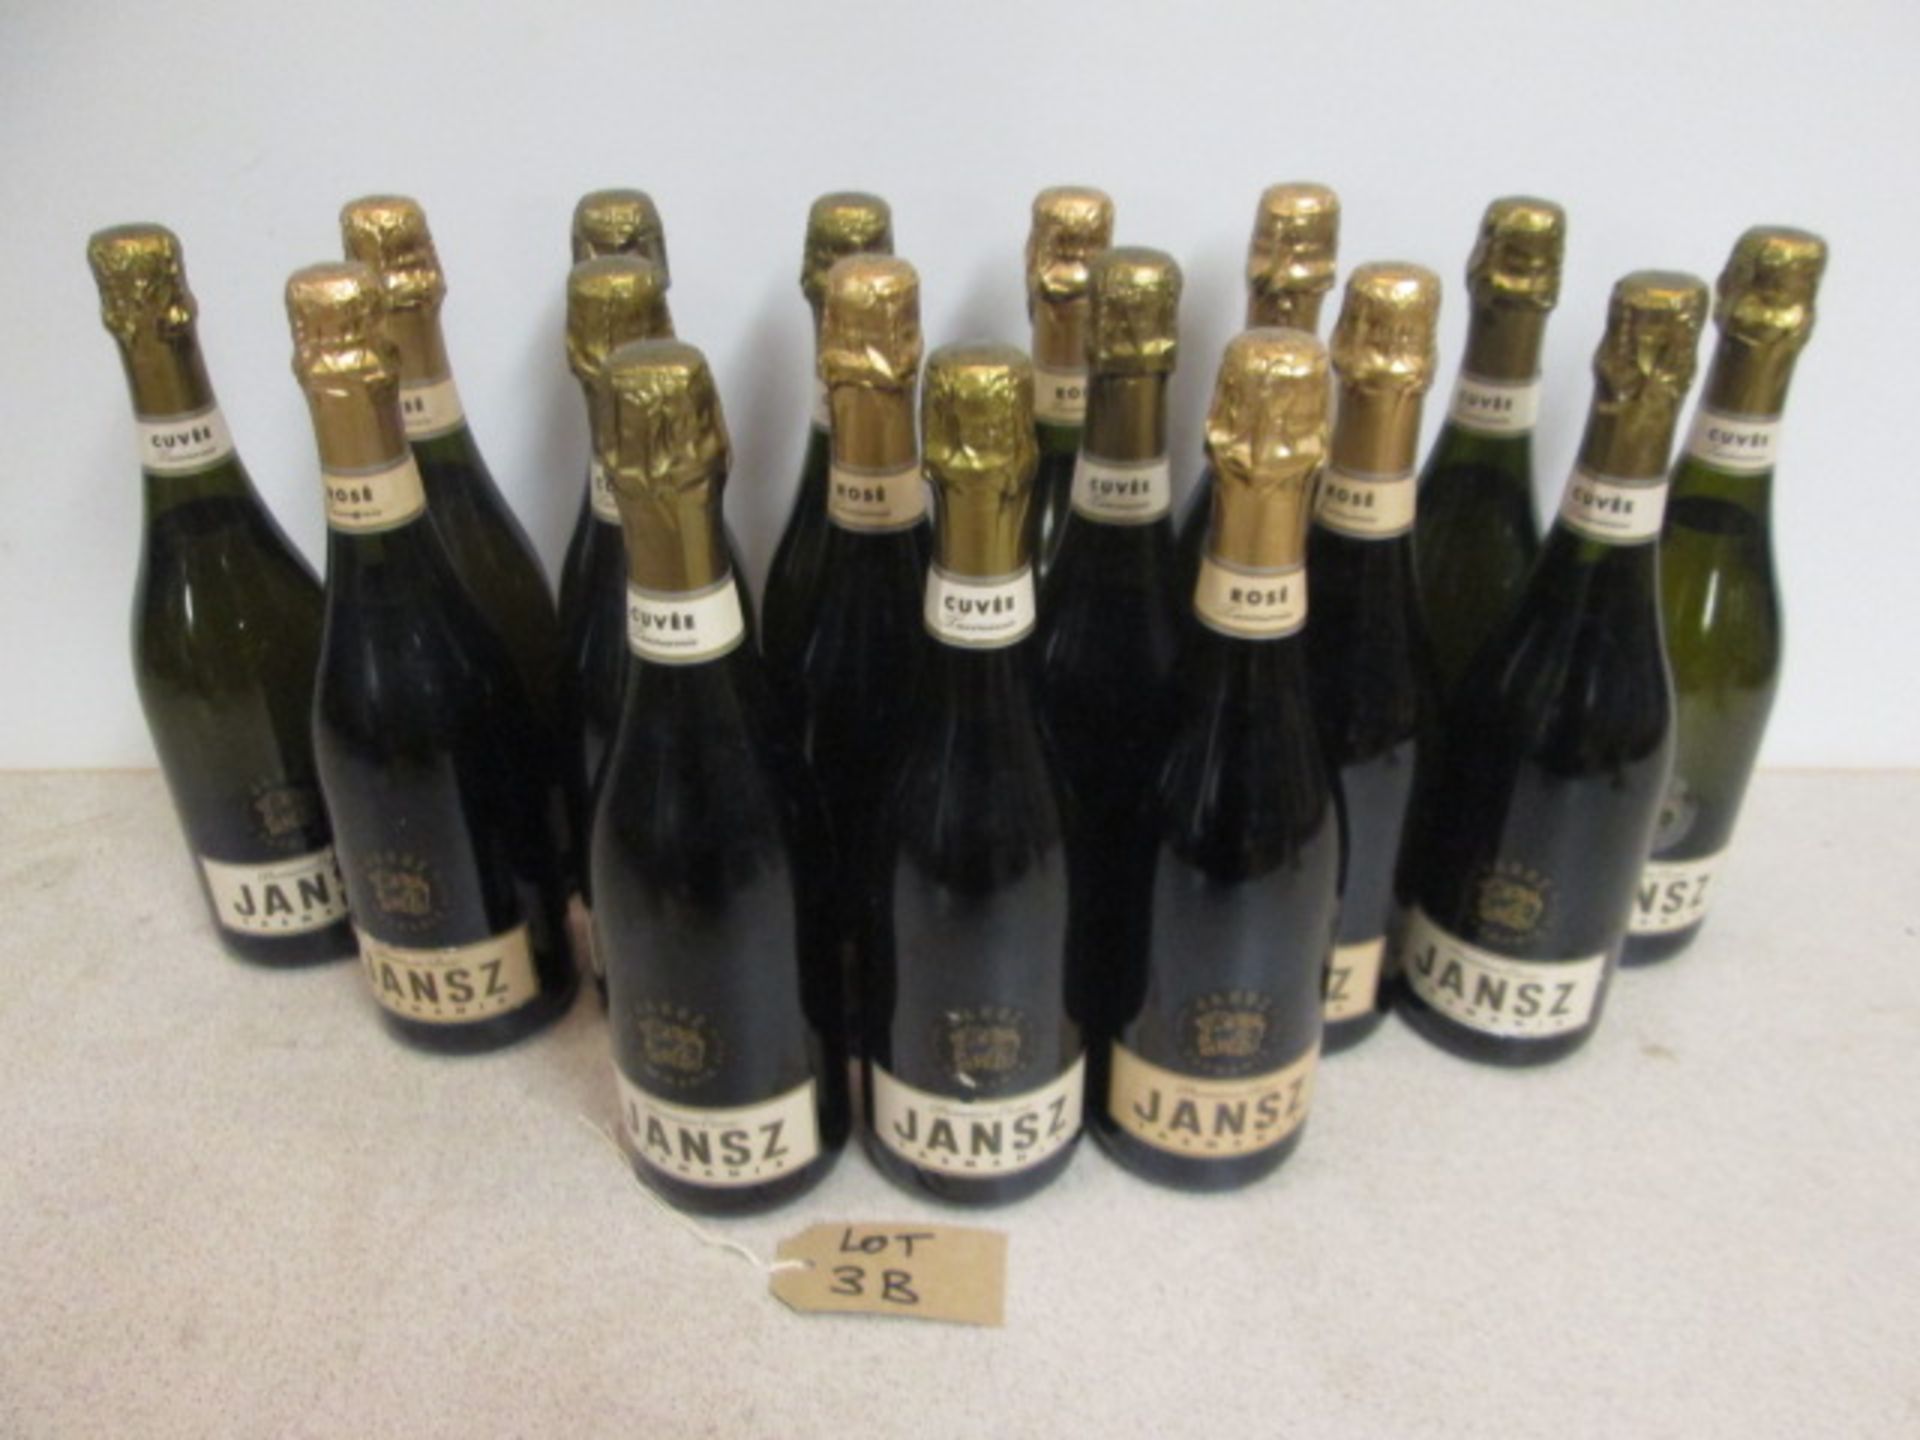 17 x Bottles of Jansz Tasmania (7 Premium Rose, 10 Cuvee)